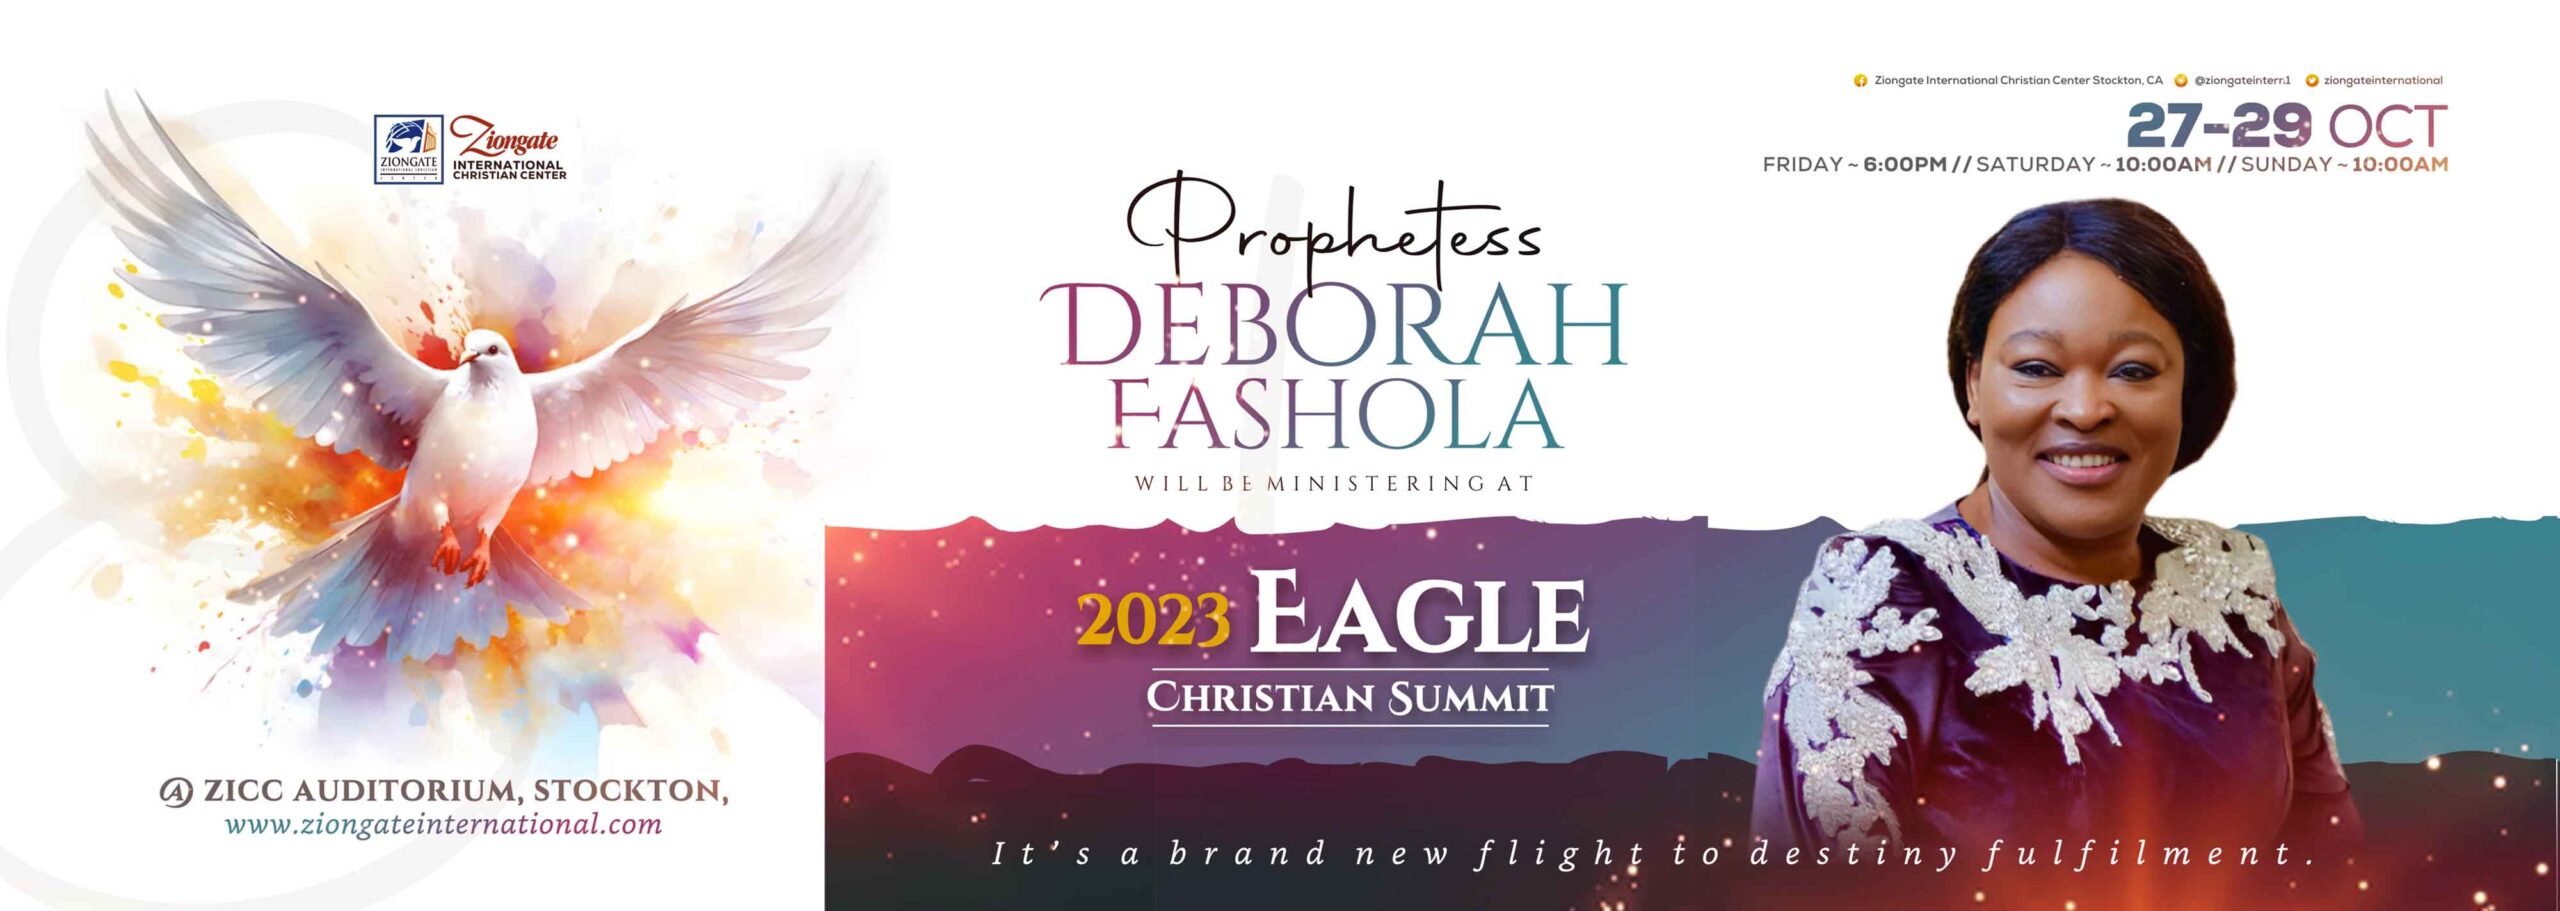 zicc ziongate ECS 2023 - Prophetess Deborah